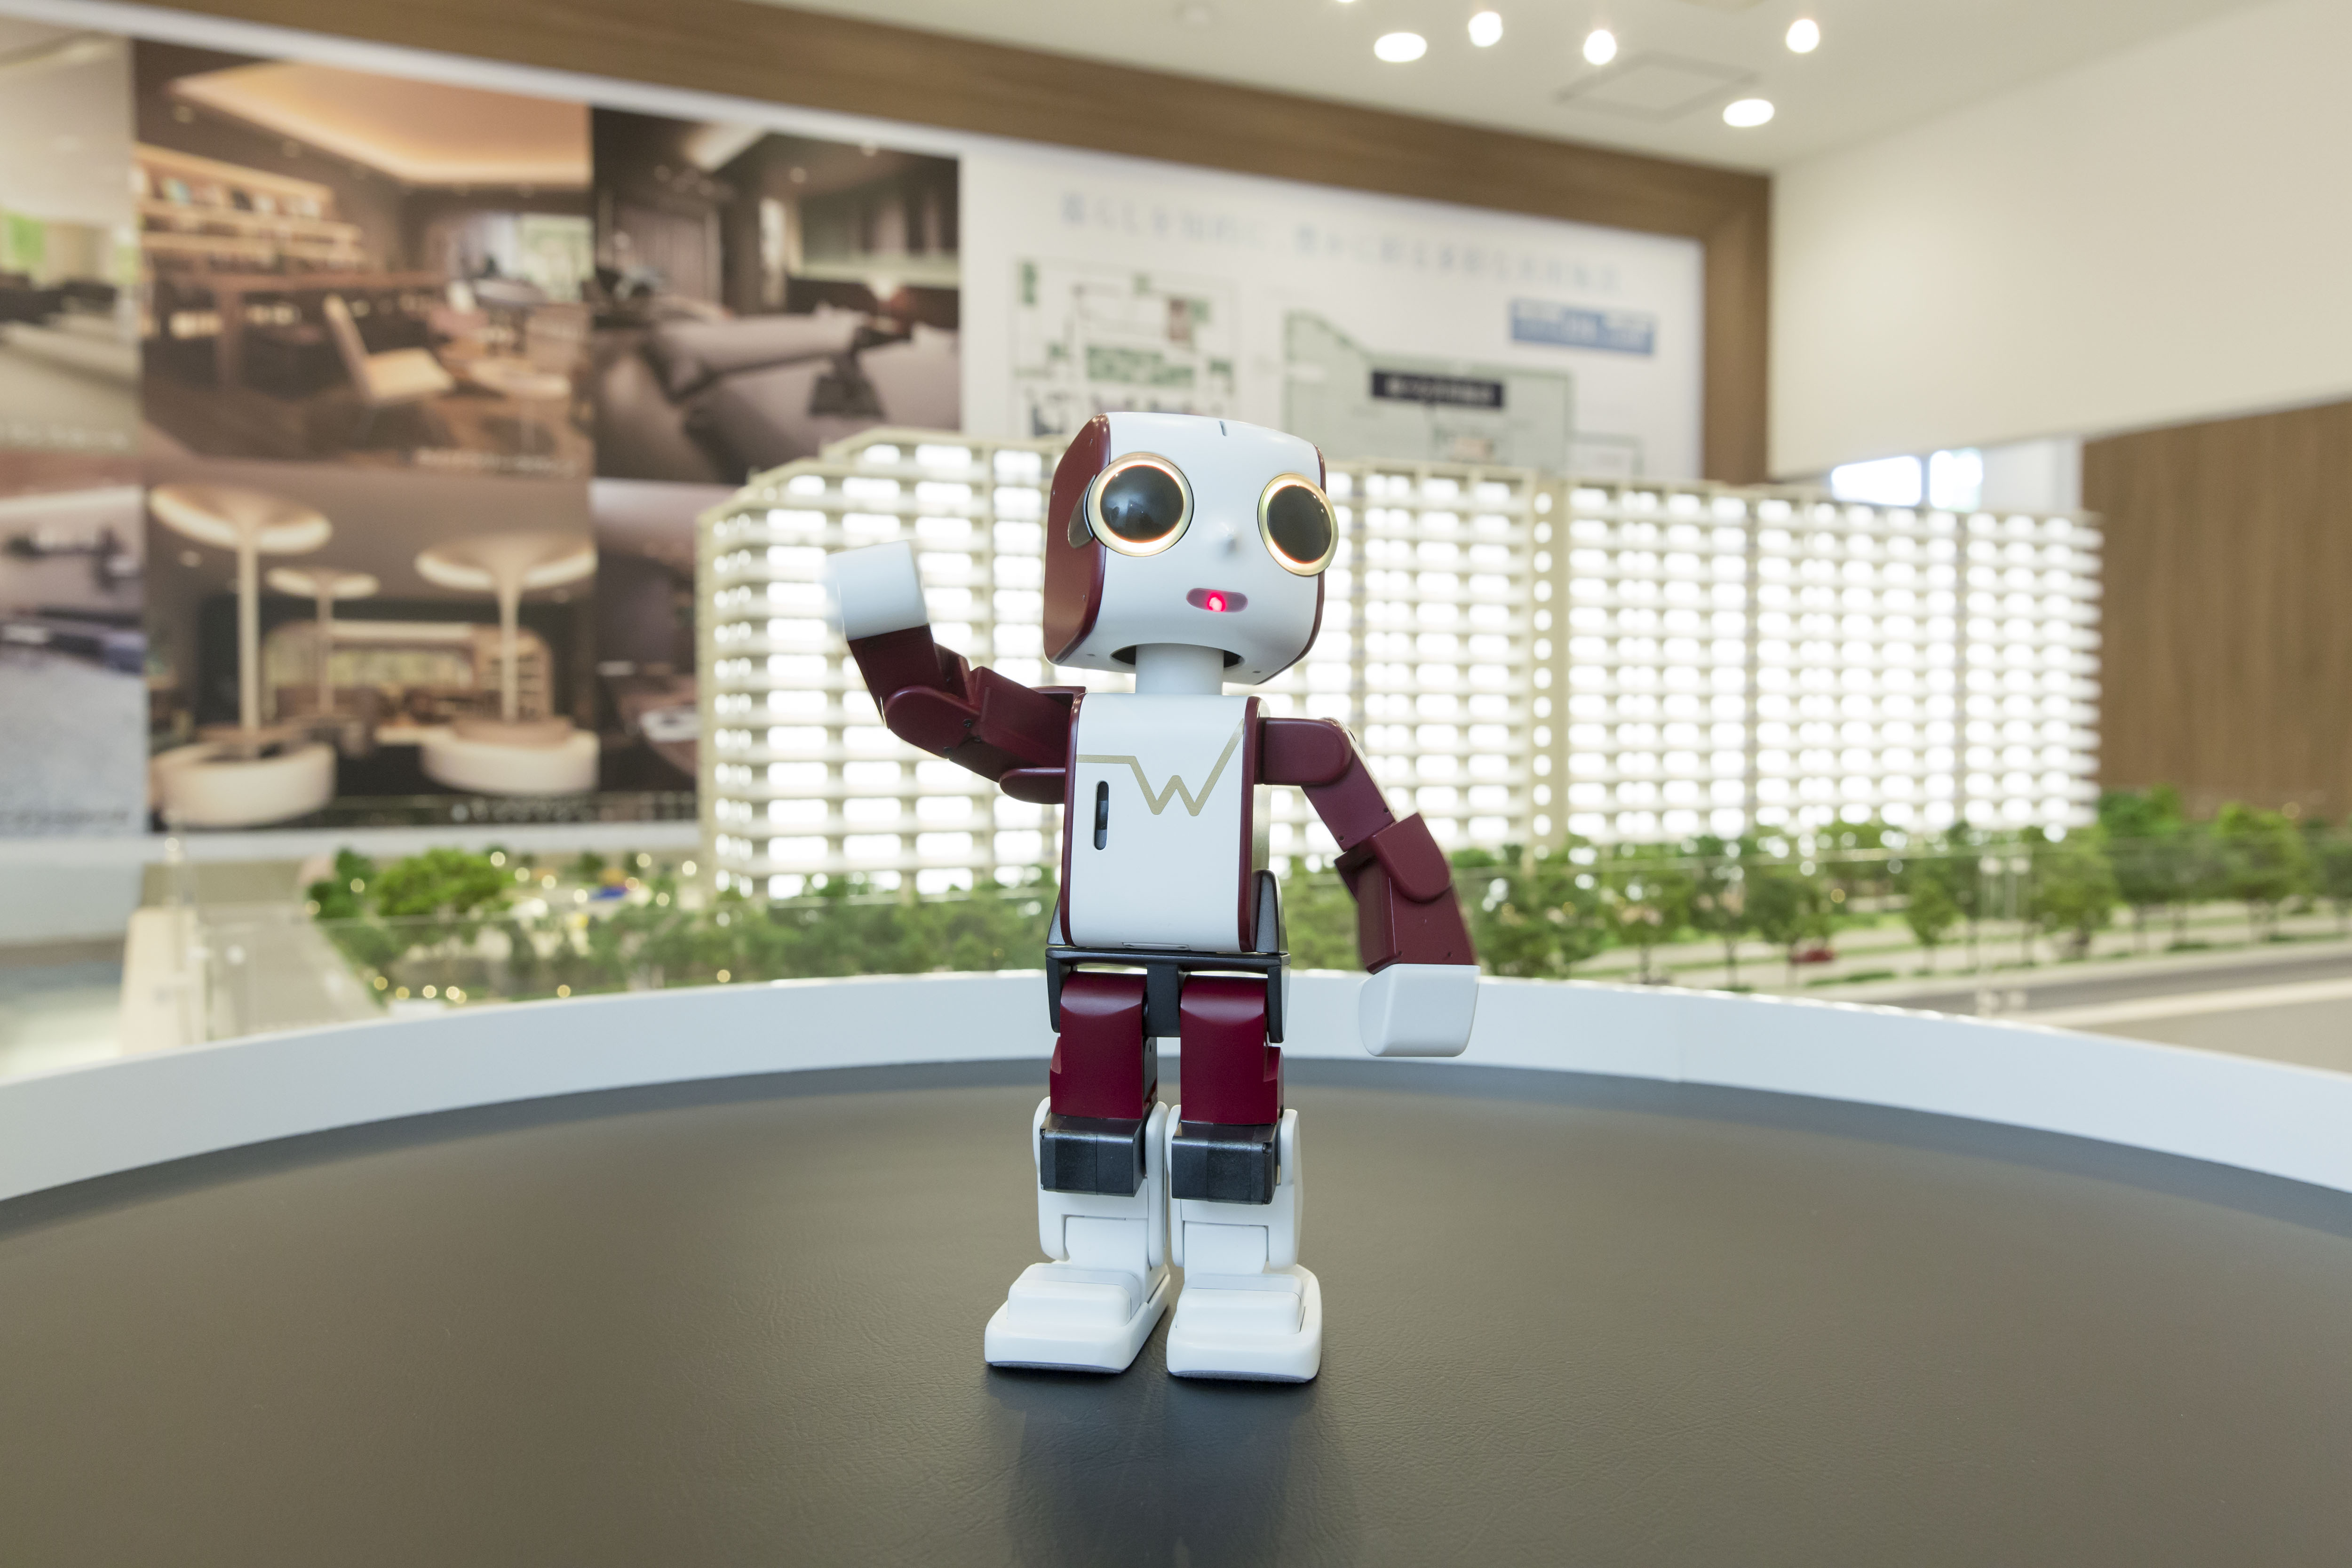 ロボットクリエーター高橋智隆氏開発「ウエリボ」に エーアイのAITalk（R）3声の職人が採用  ～「ウエリスつくば竹園」にて案内ロボットとして活躍中～